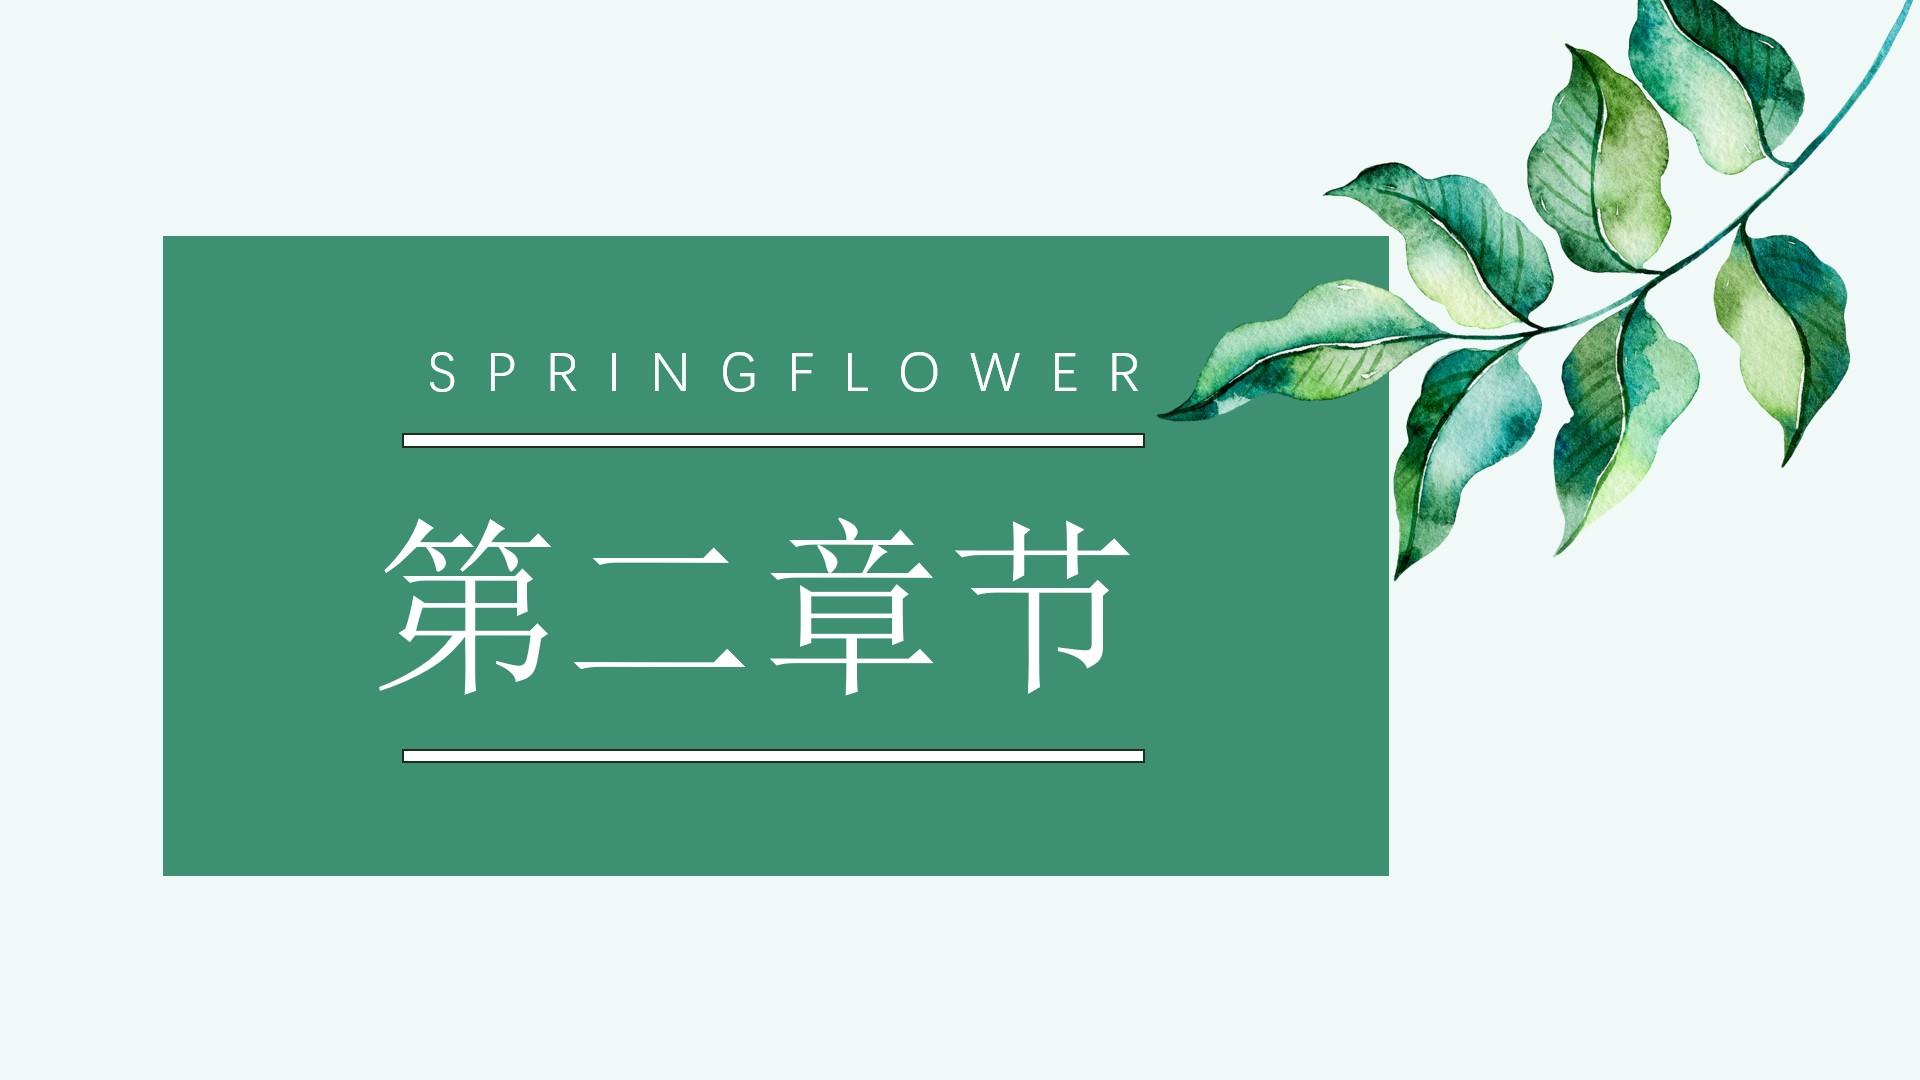 教育教学青色白色章节 springflower云素材PPT模板1672509117967